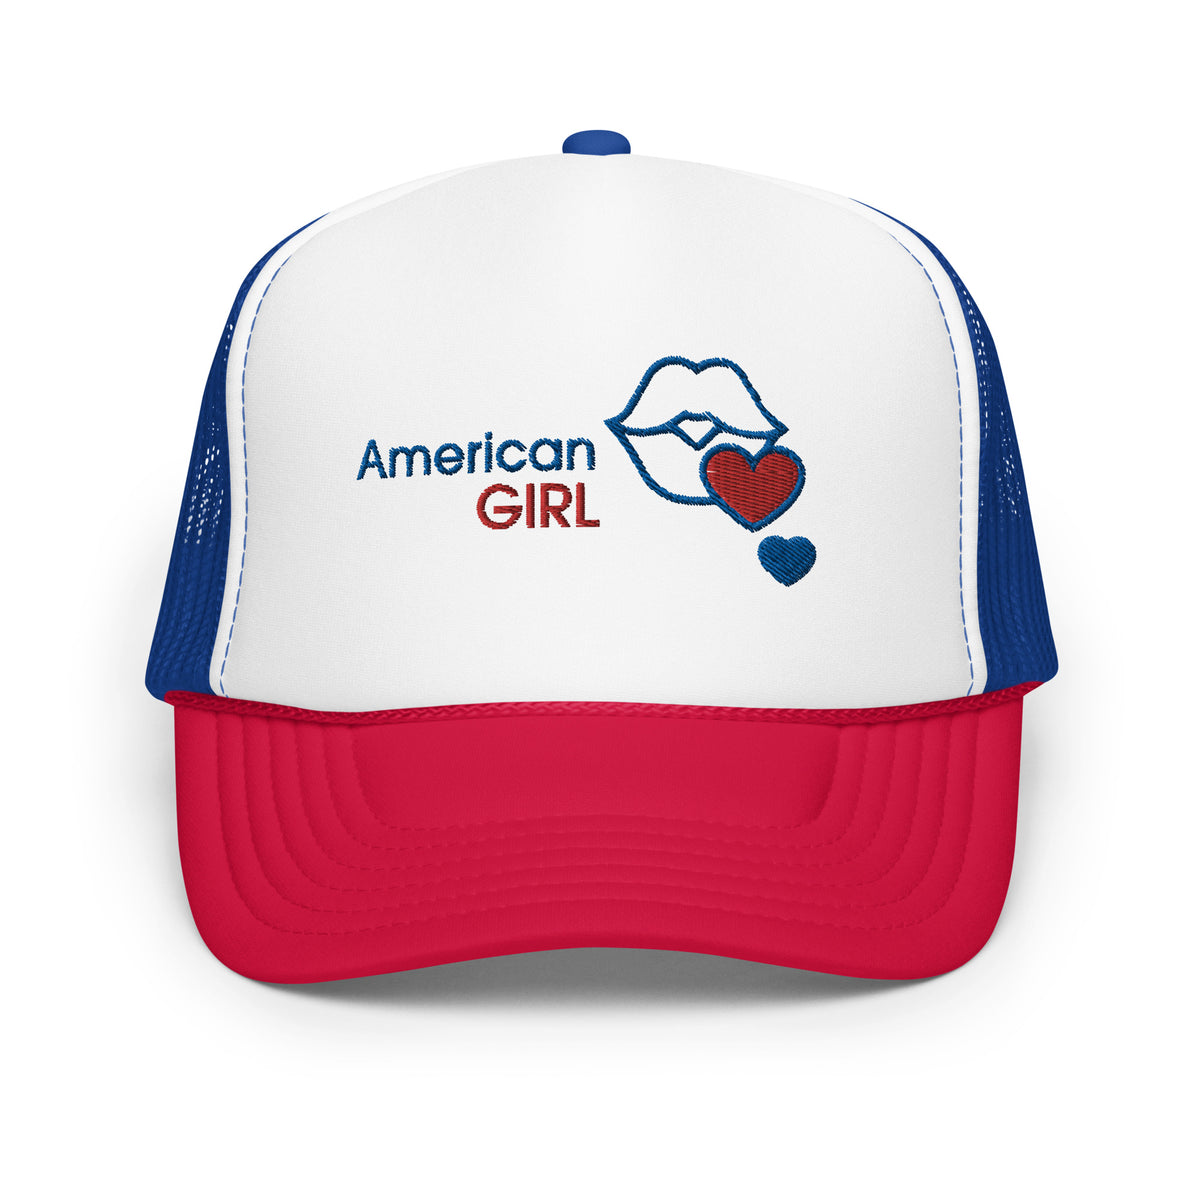 American Girl Foam trucker hat